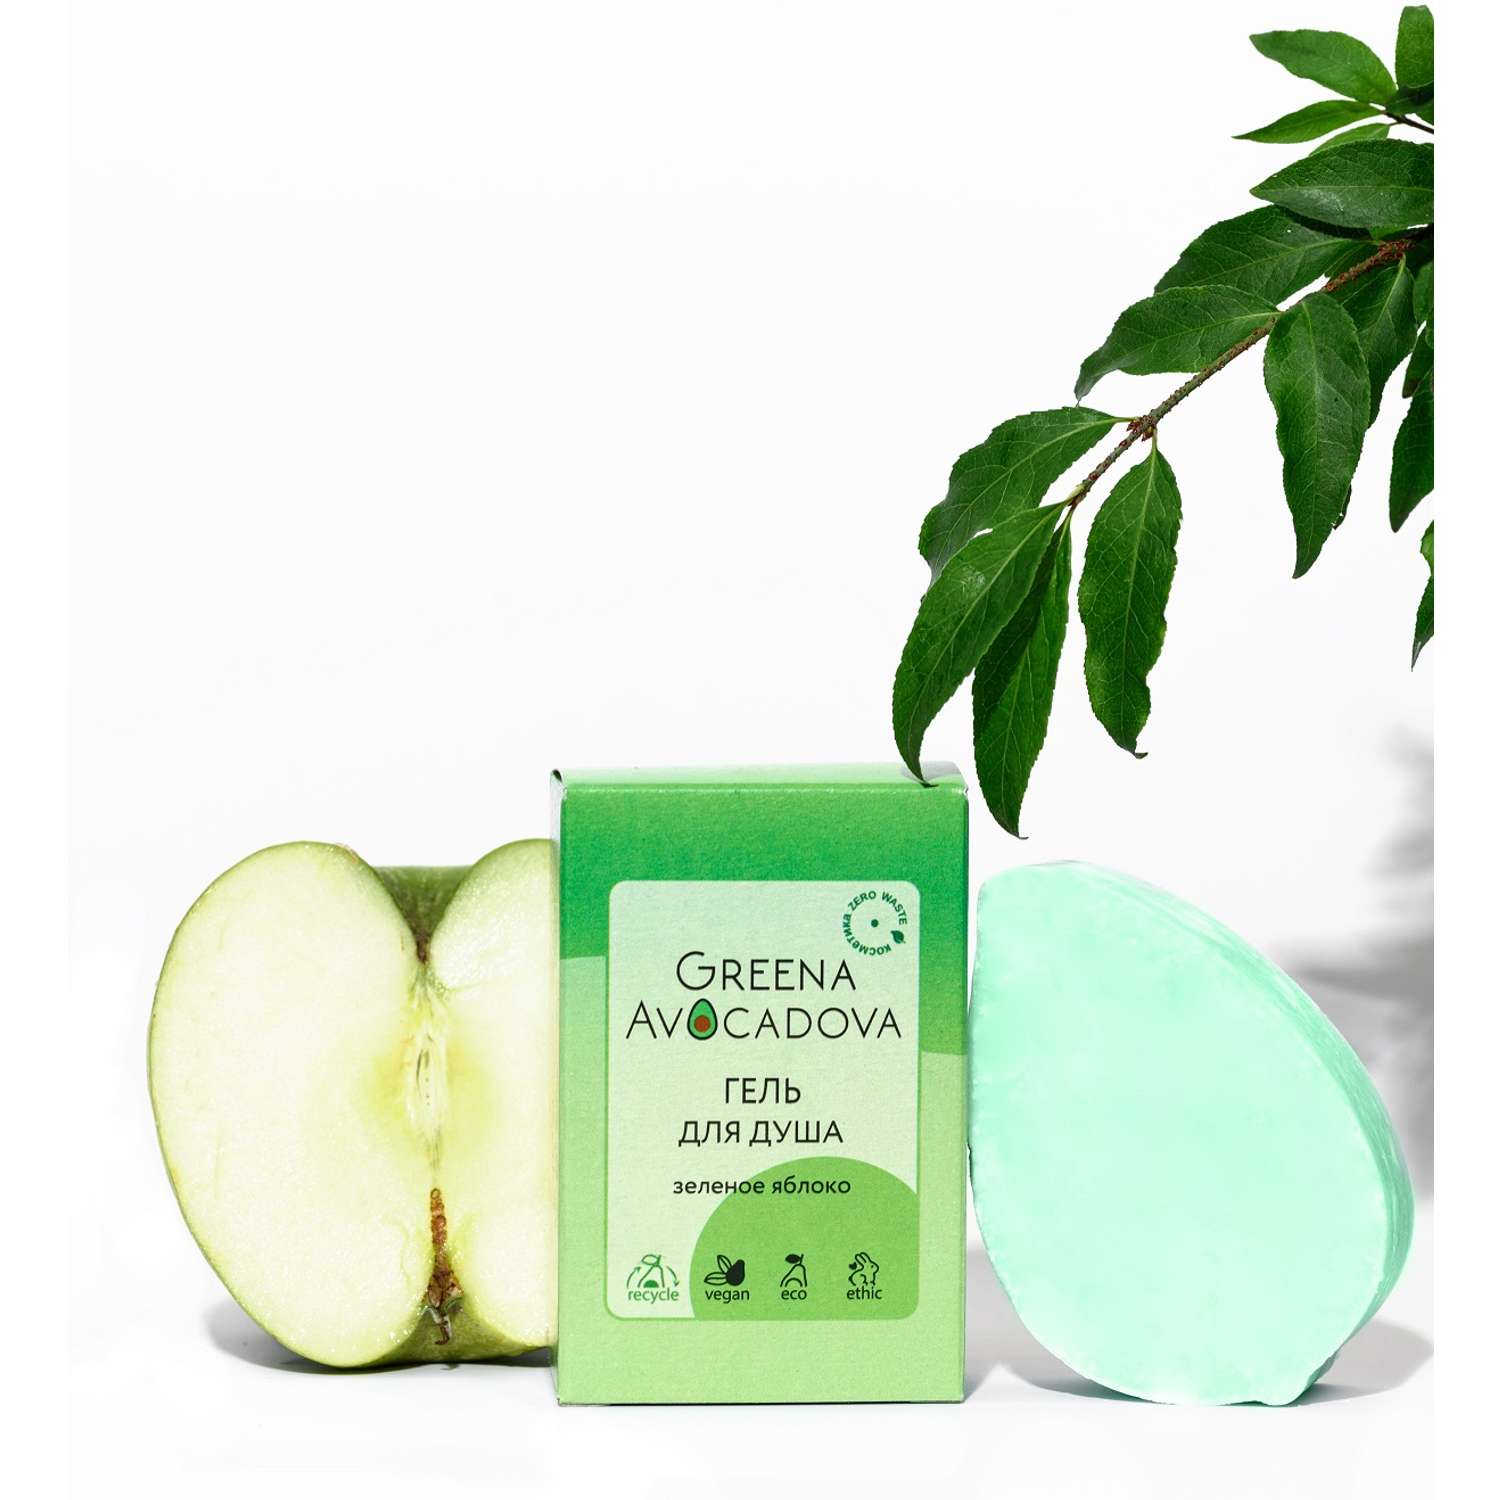 Твердый гель для душа Greena Avocadova Зеленое яблоко - фото 2